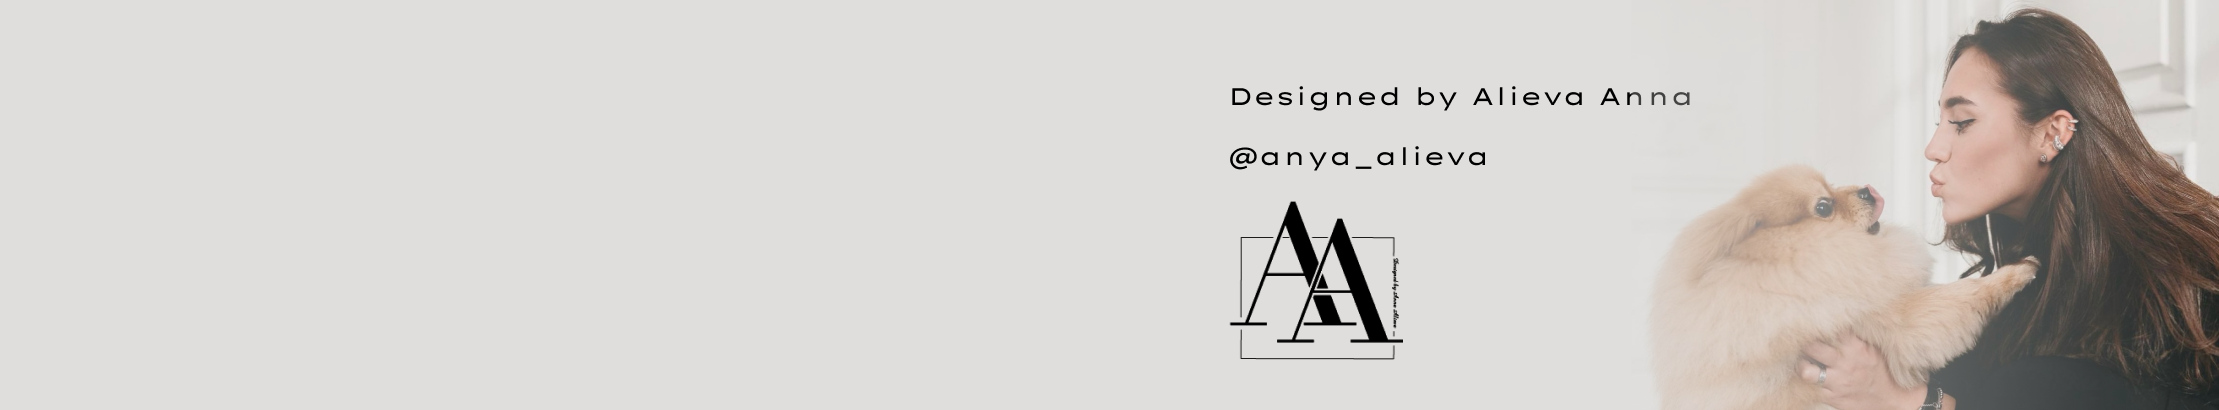 Anna Alieva profil başlığı